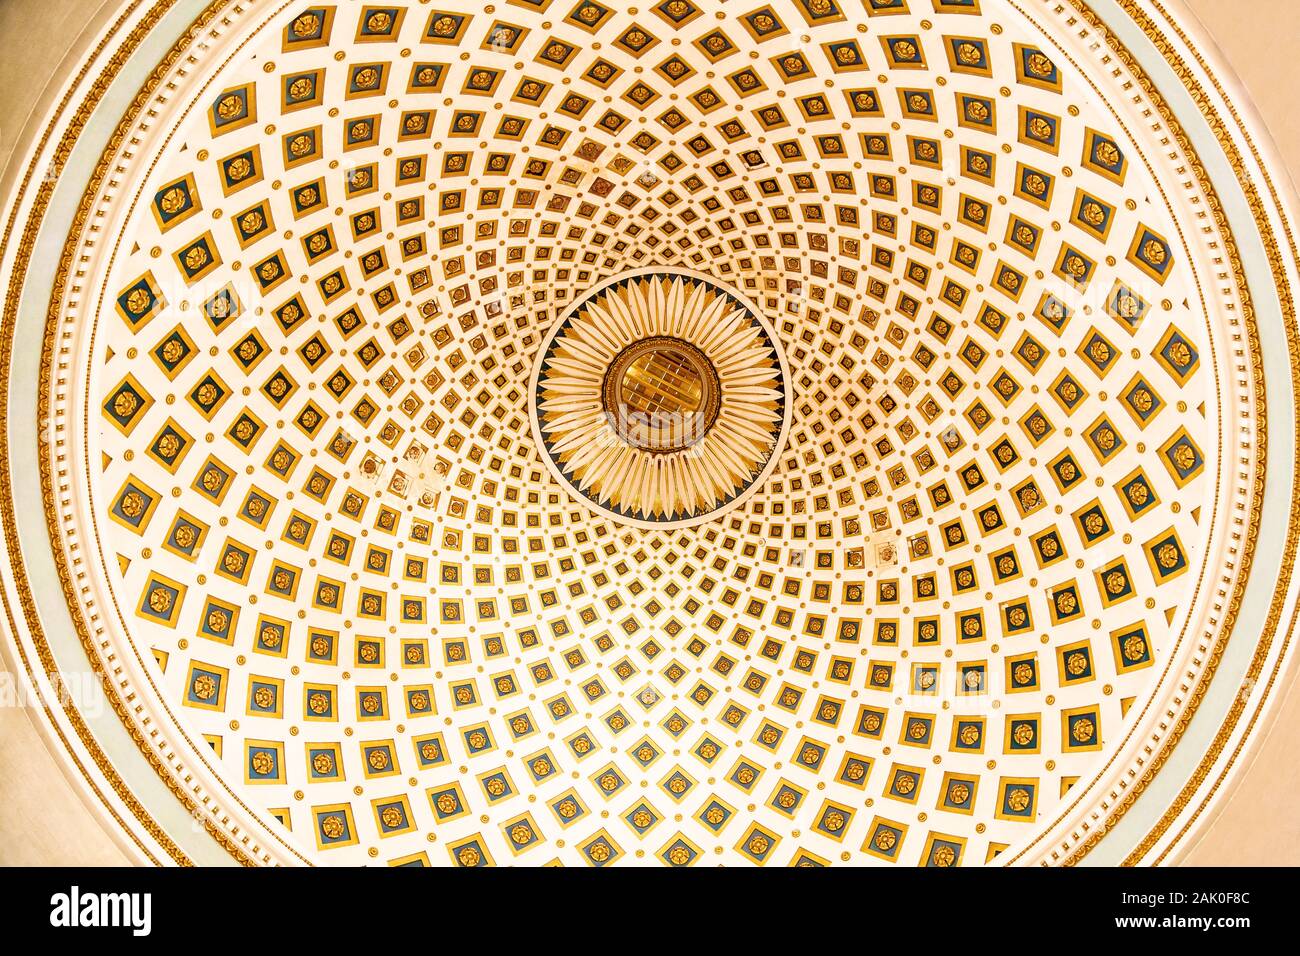 Le troisième plus grand dôme au monde avec un motif abstrait dans les tons pastel situé dans la basilique de l'Assomption de Notre-Dame. Banque D'Images